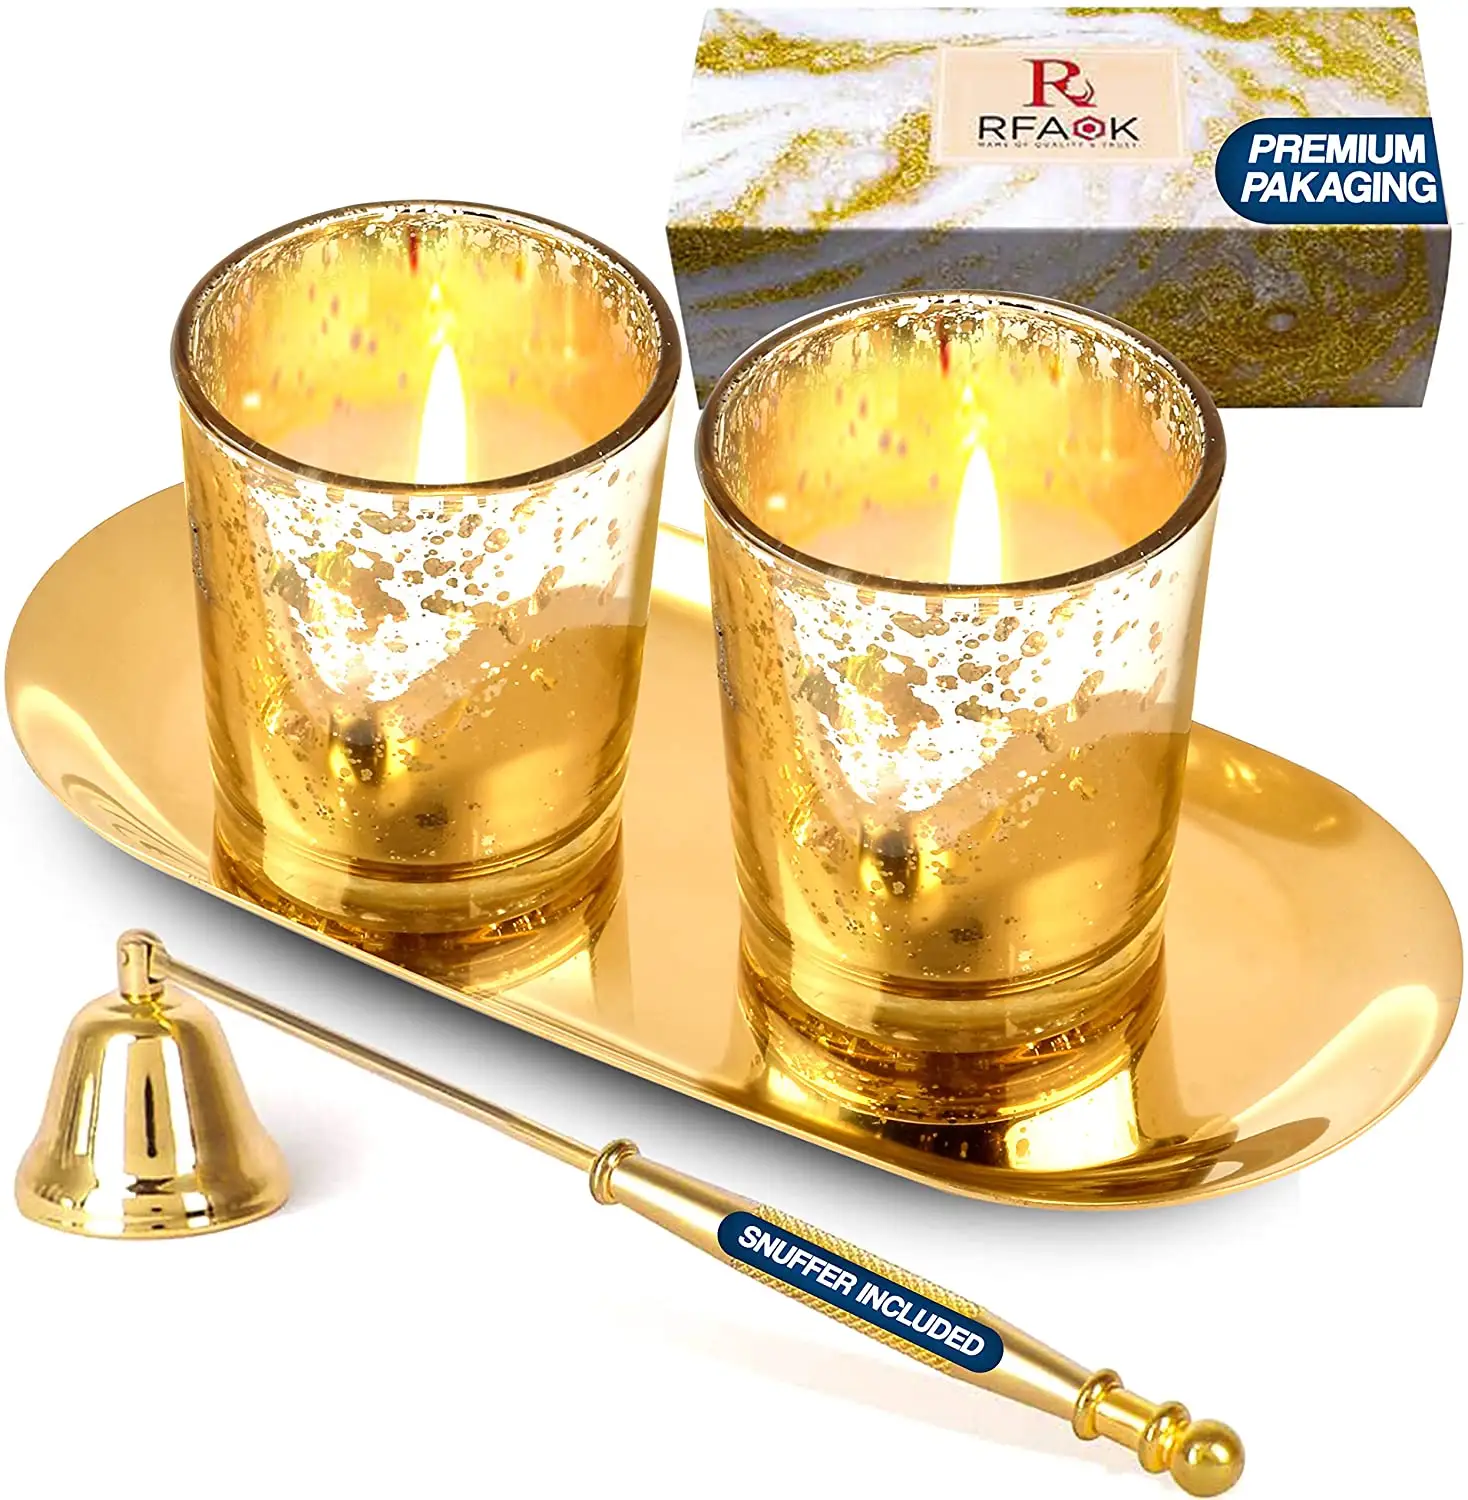 Trang Chủ Trang Trí Vàng Vàng Mã Glass Candle Holders Với Candle Tray Và Candle Snuffer Trong Thiết Kế Hiện Đại